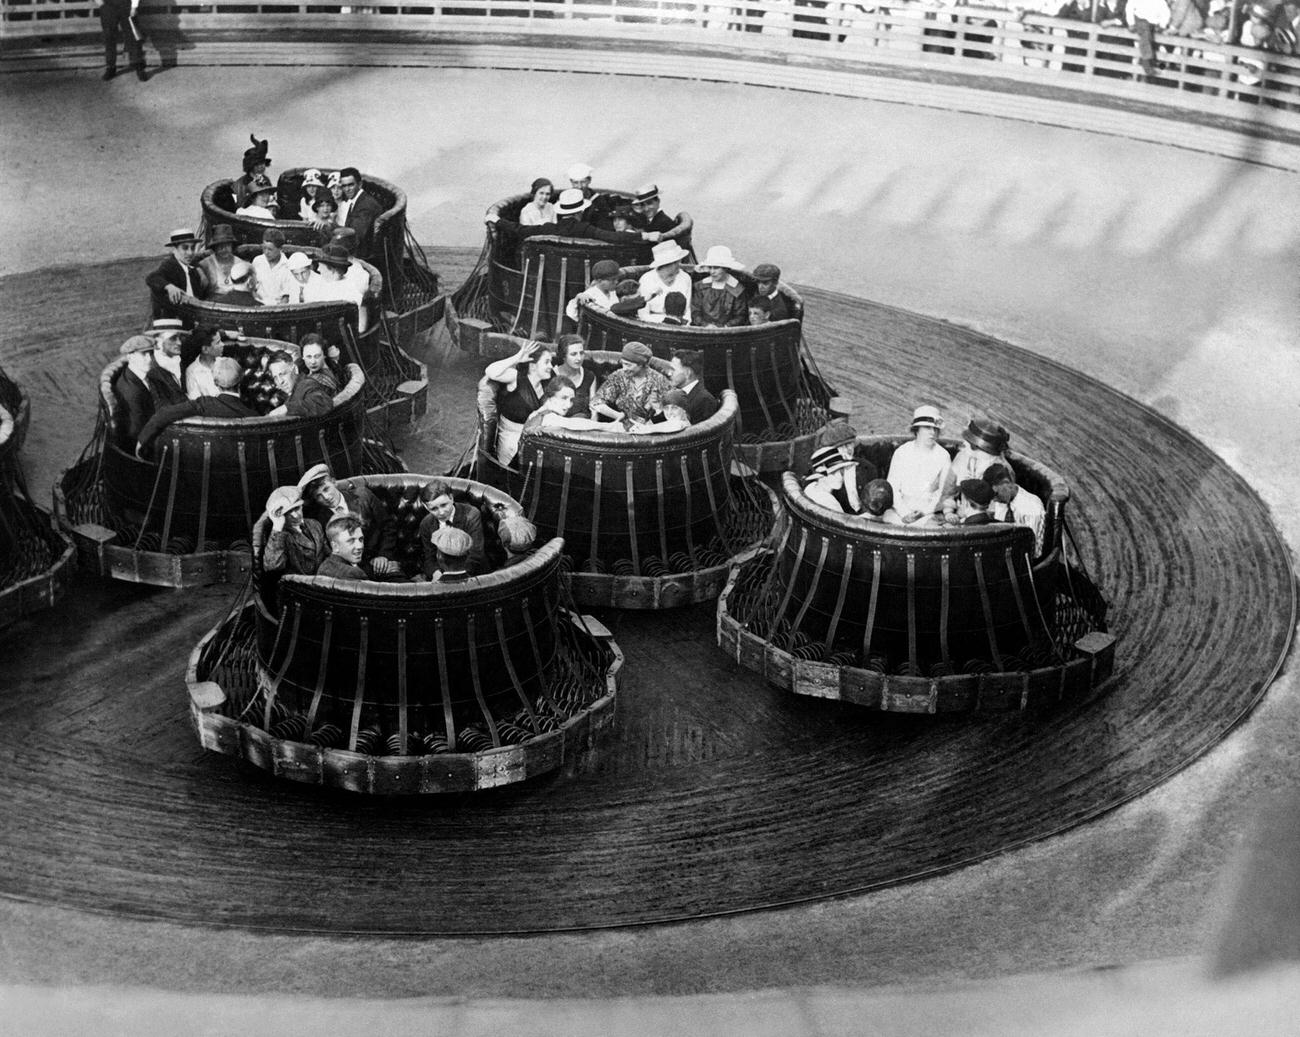 Luna Park Attraction At Coney Island, June 22, 1931